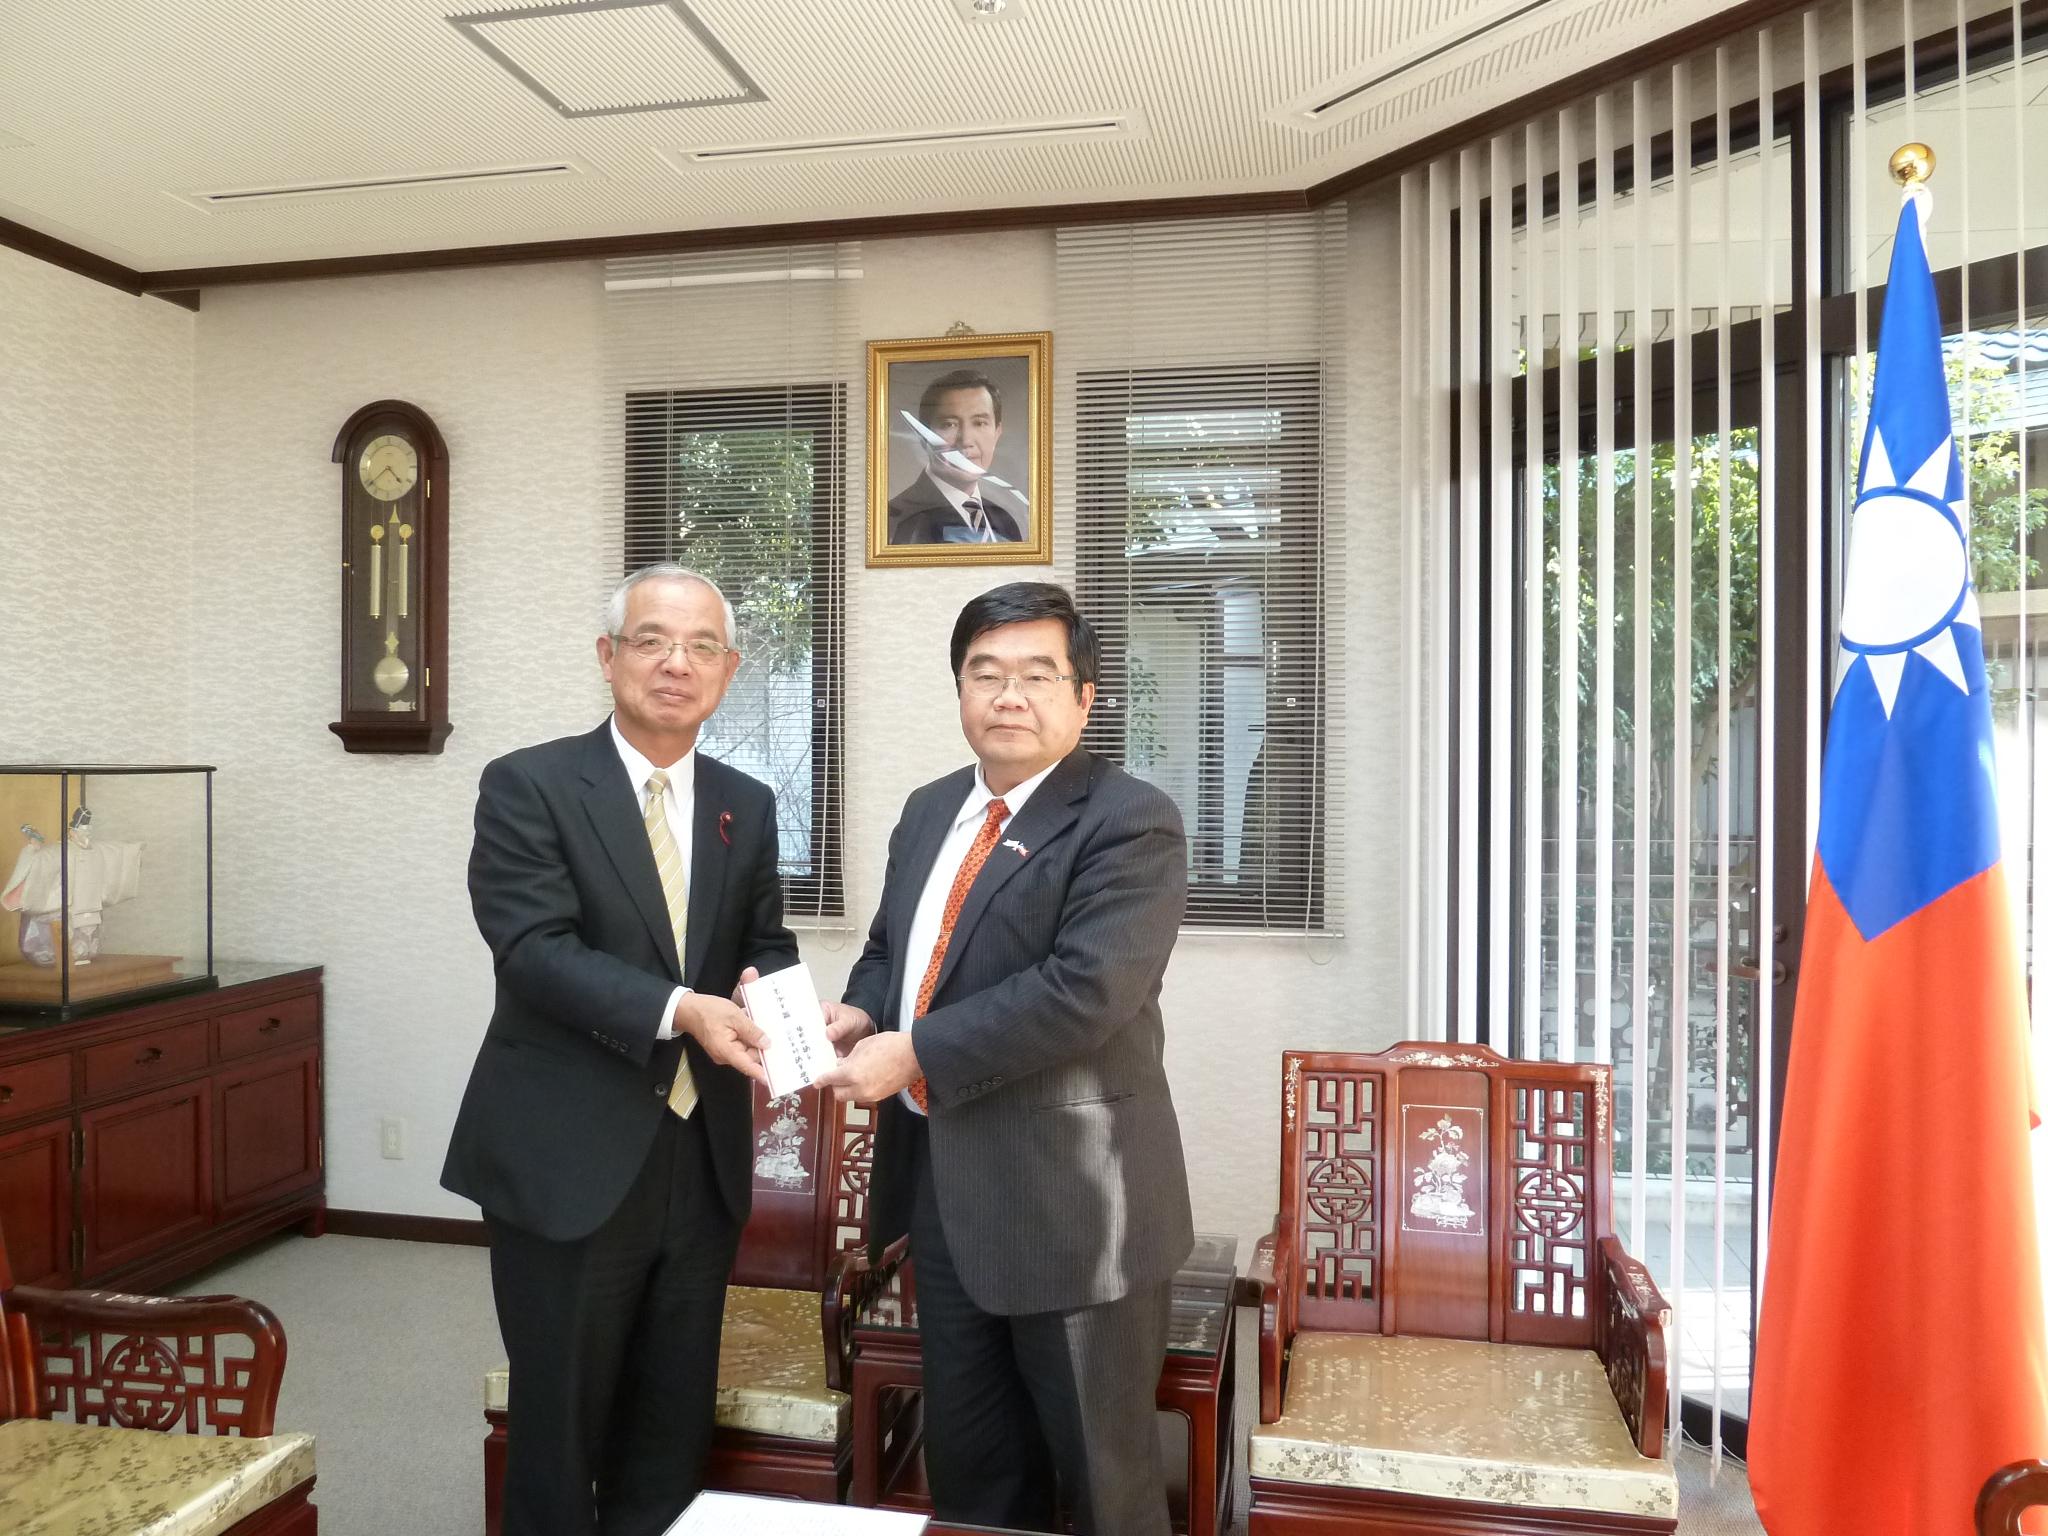 3/2福岡市議会日台友好議員連盟光安力会長が台湾南部大震災賑災金を提供した。